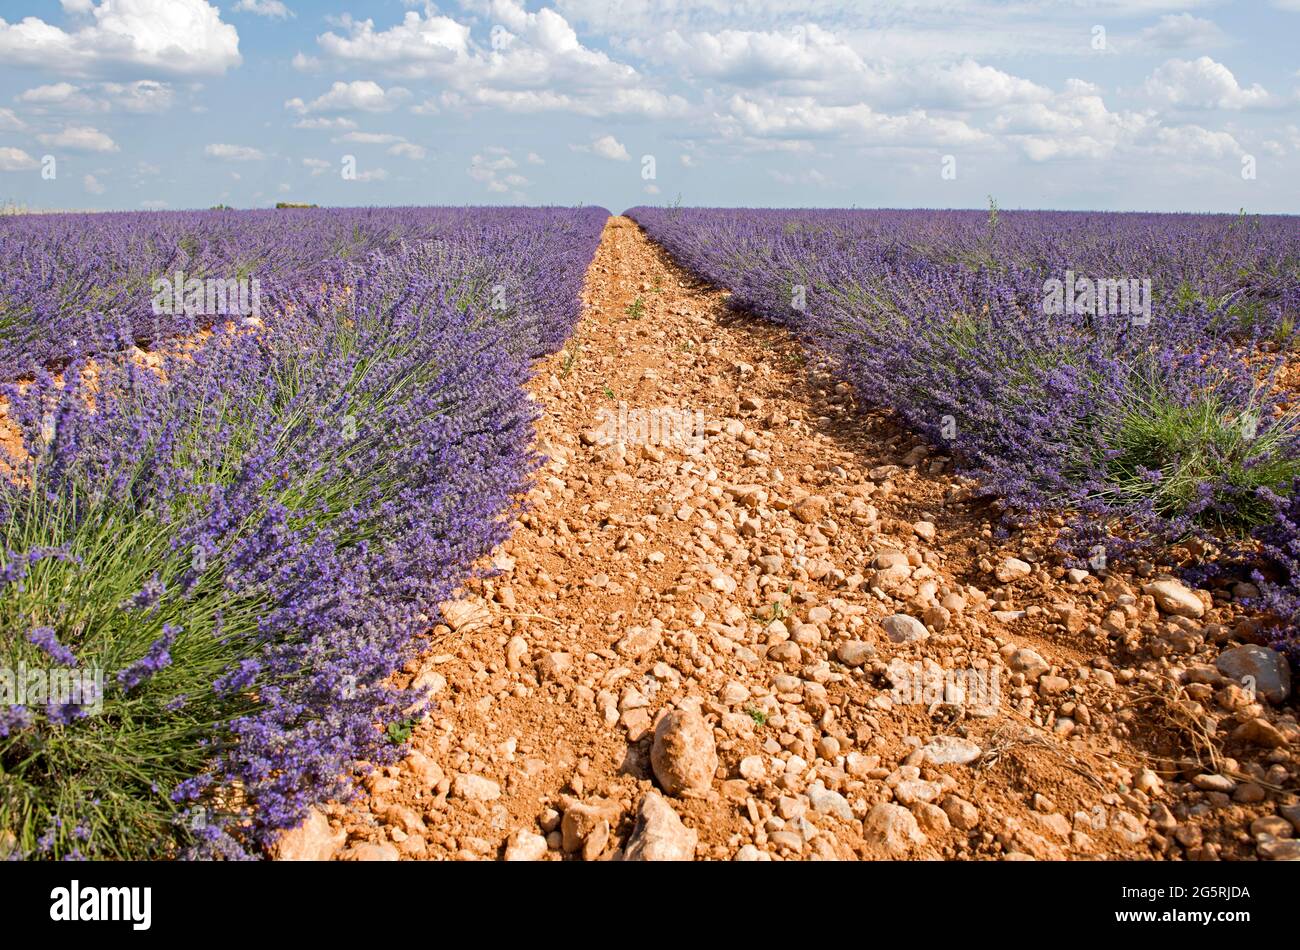 France, Alpes de Haute Provence (04), plateau de Valensole, lavender fields (Lavandula sp.) Stock Photo